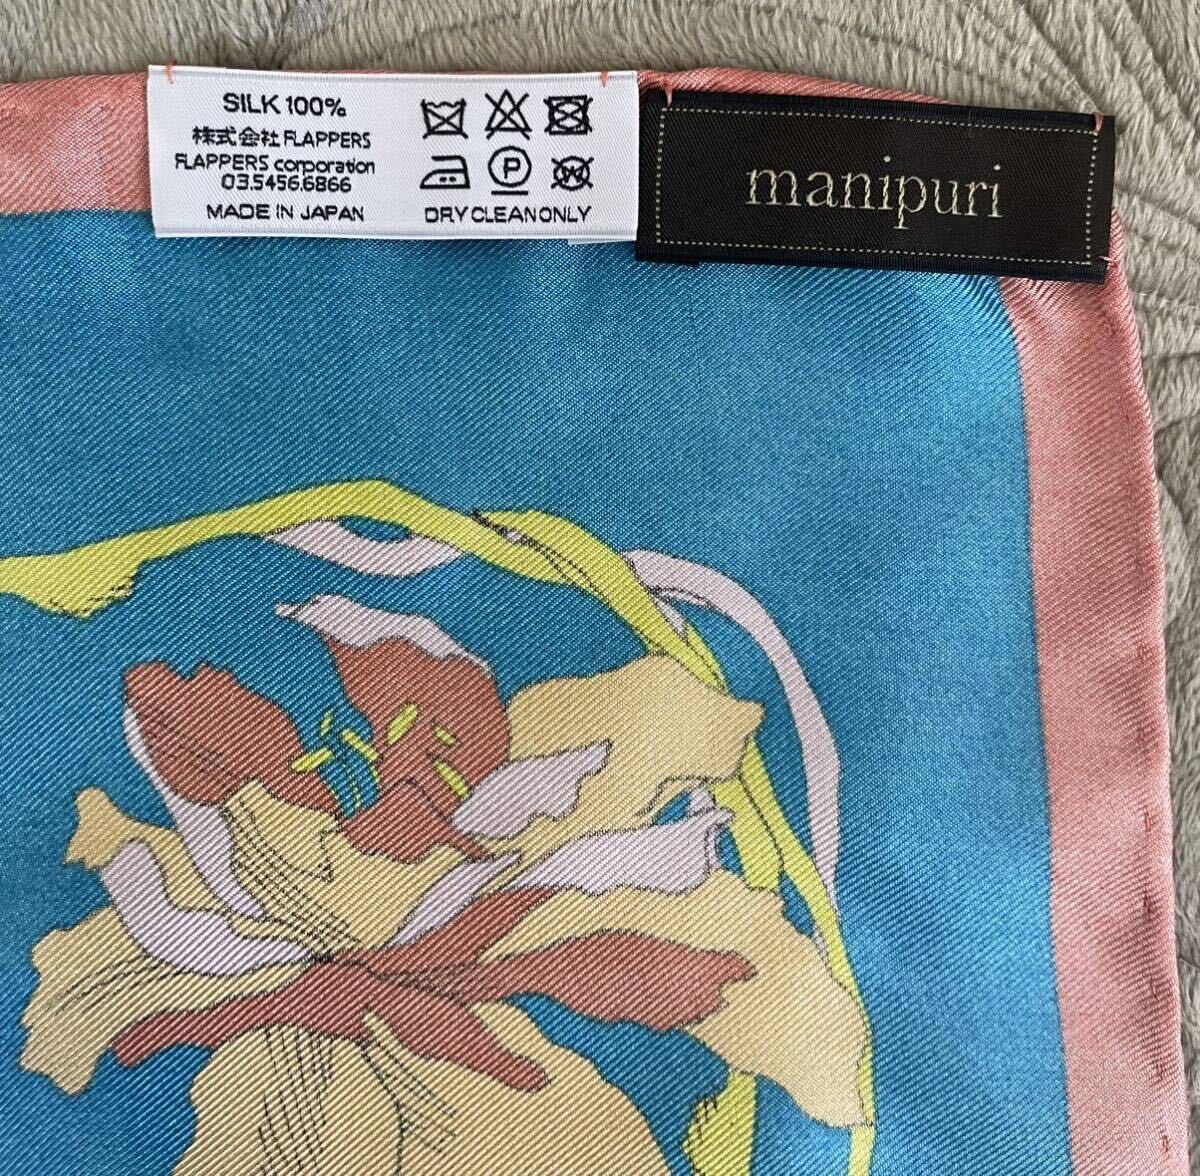 manipli шелк 100% большой размер шарф шелк синий orange незначительный orange желтый цвет manipuri сделано в Японии 